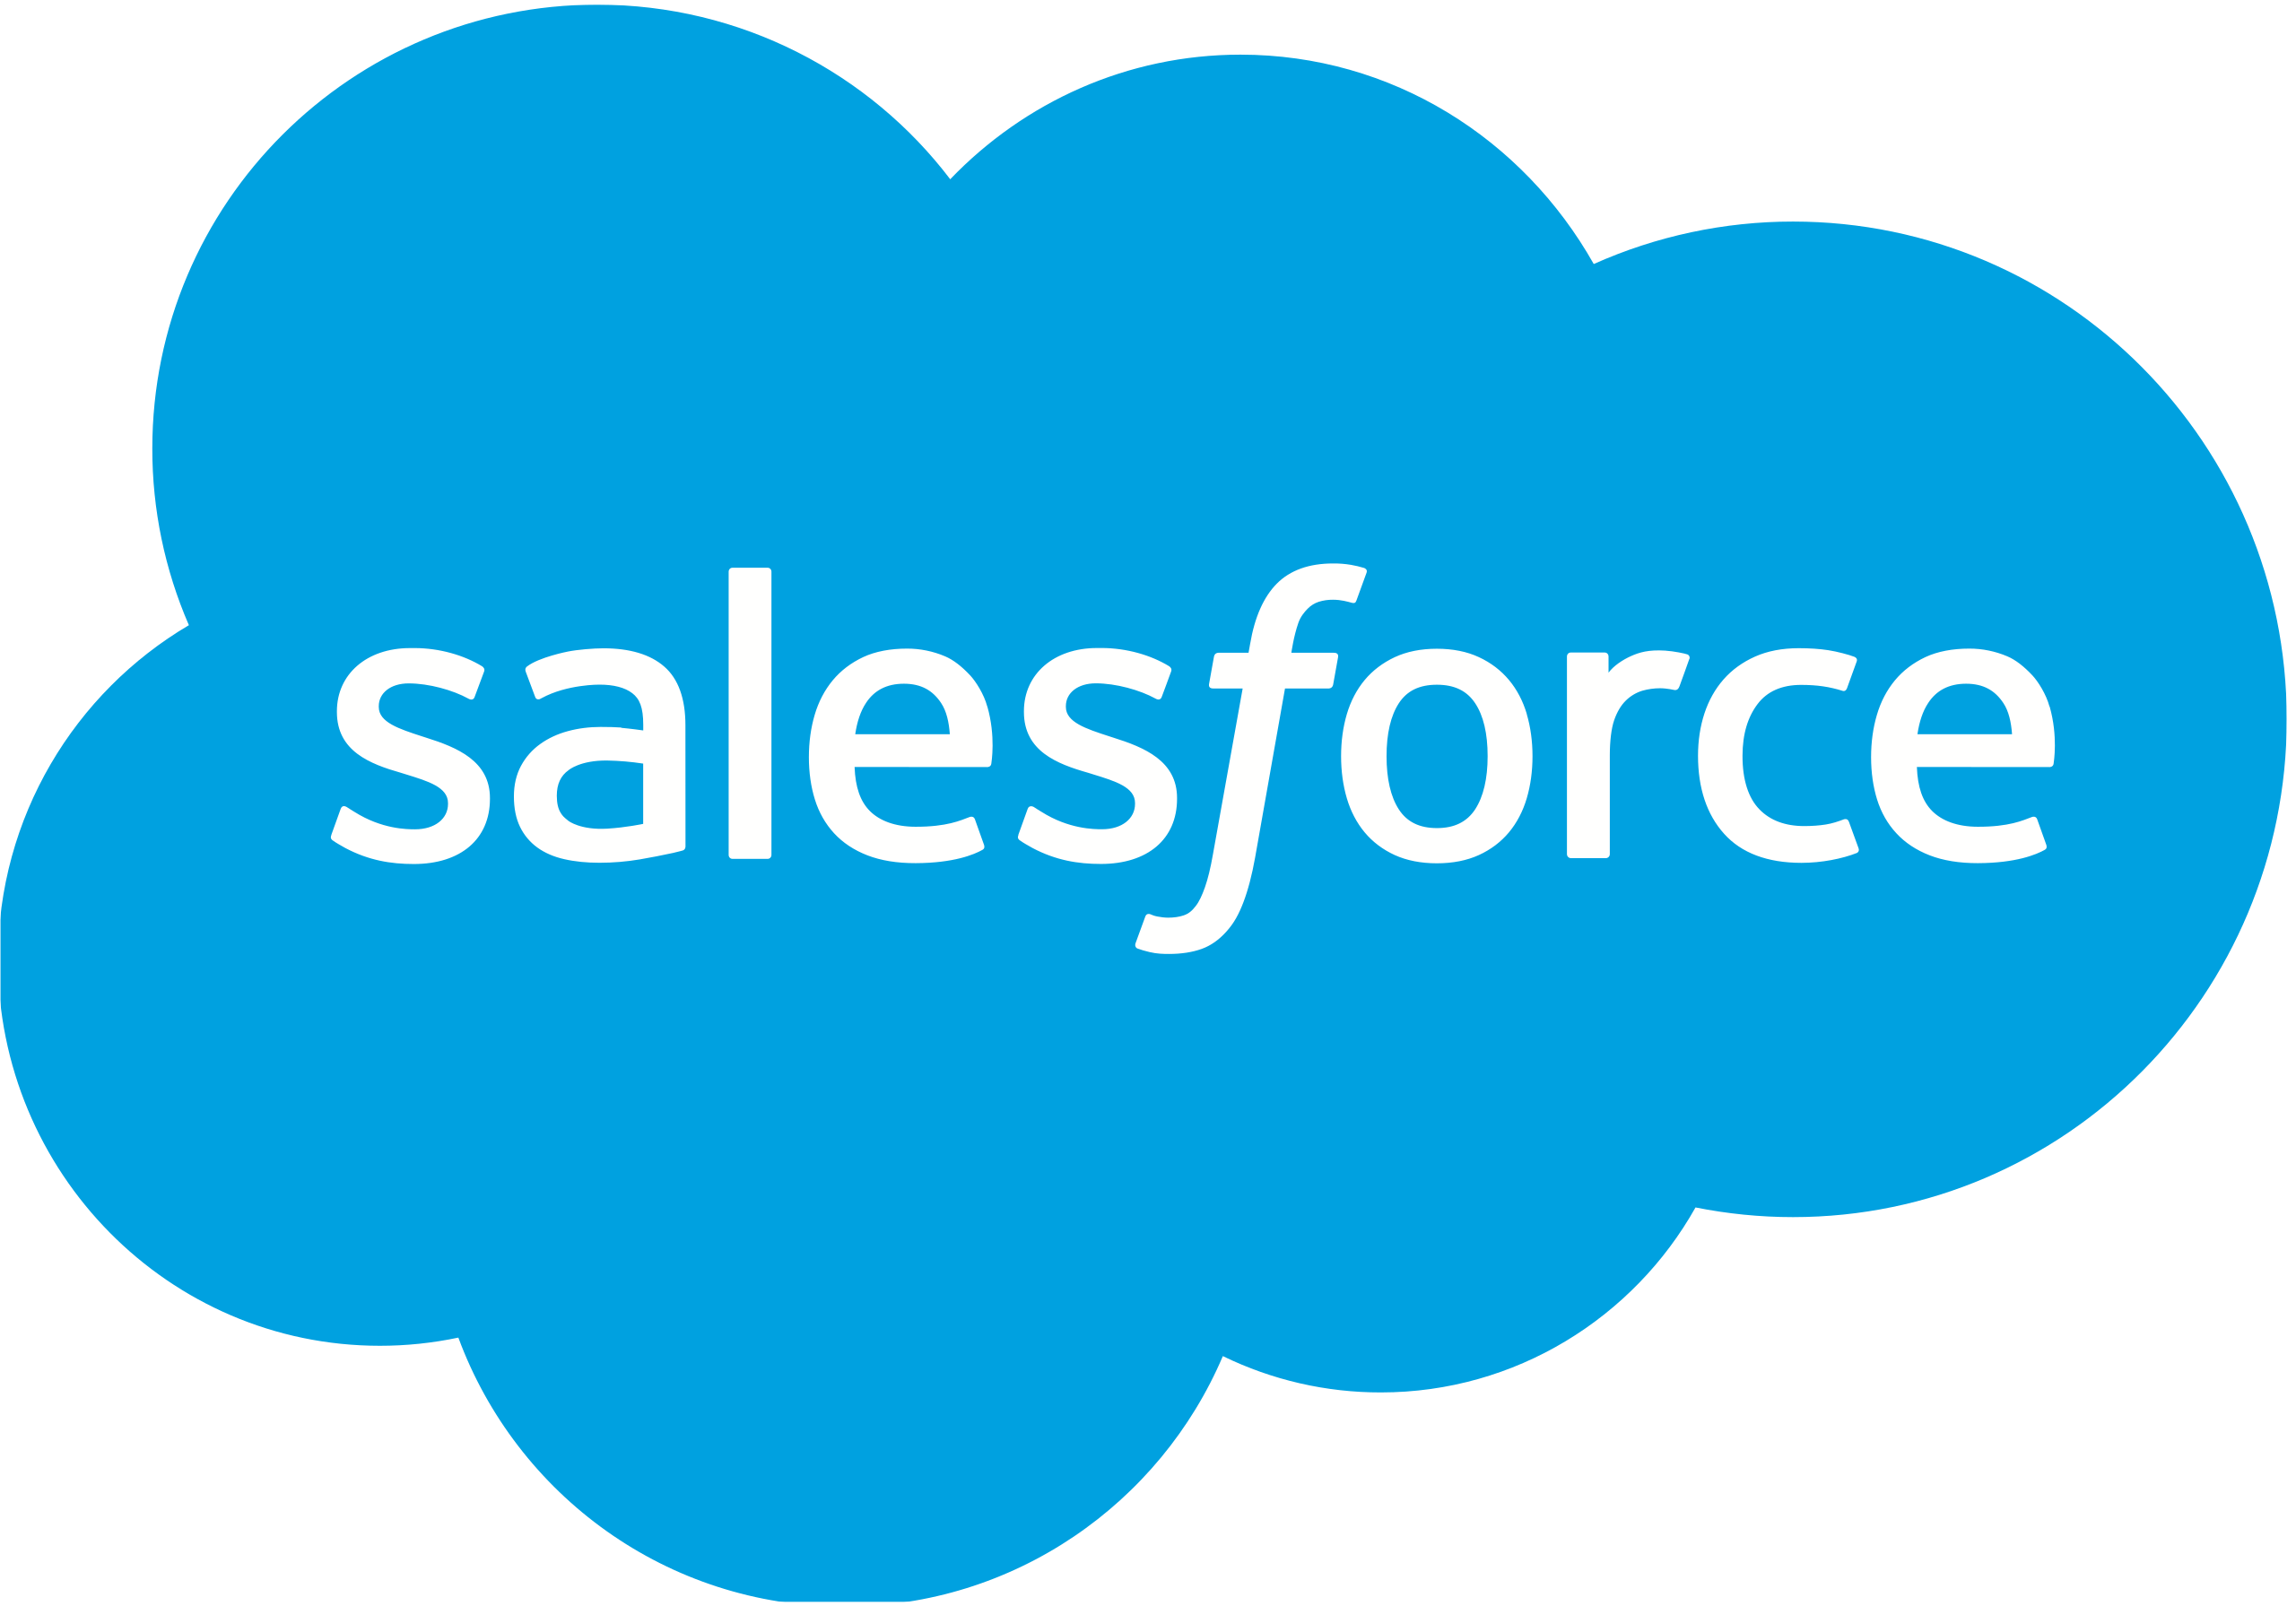 Salesforce’s logo